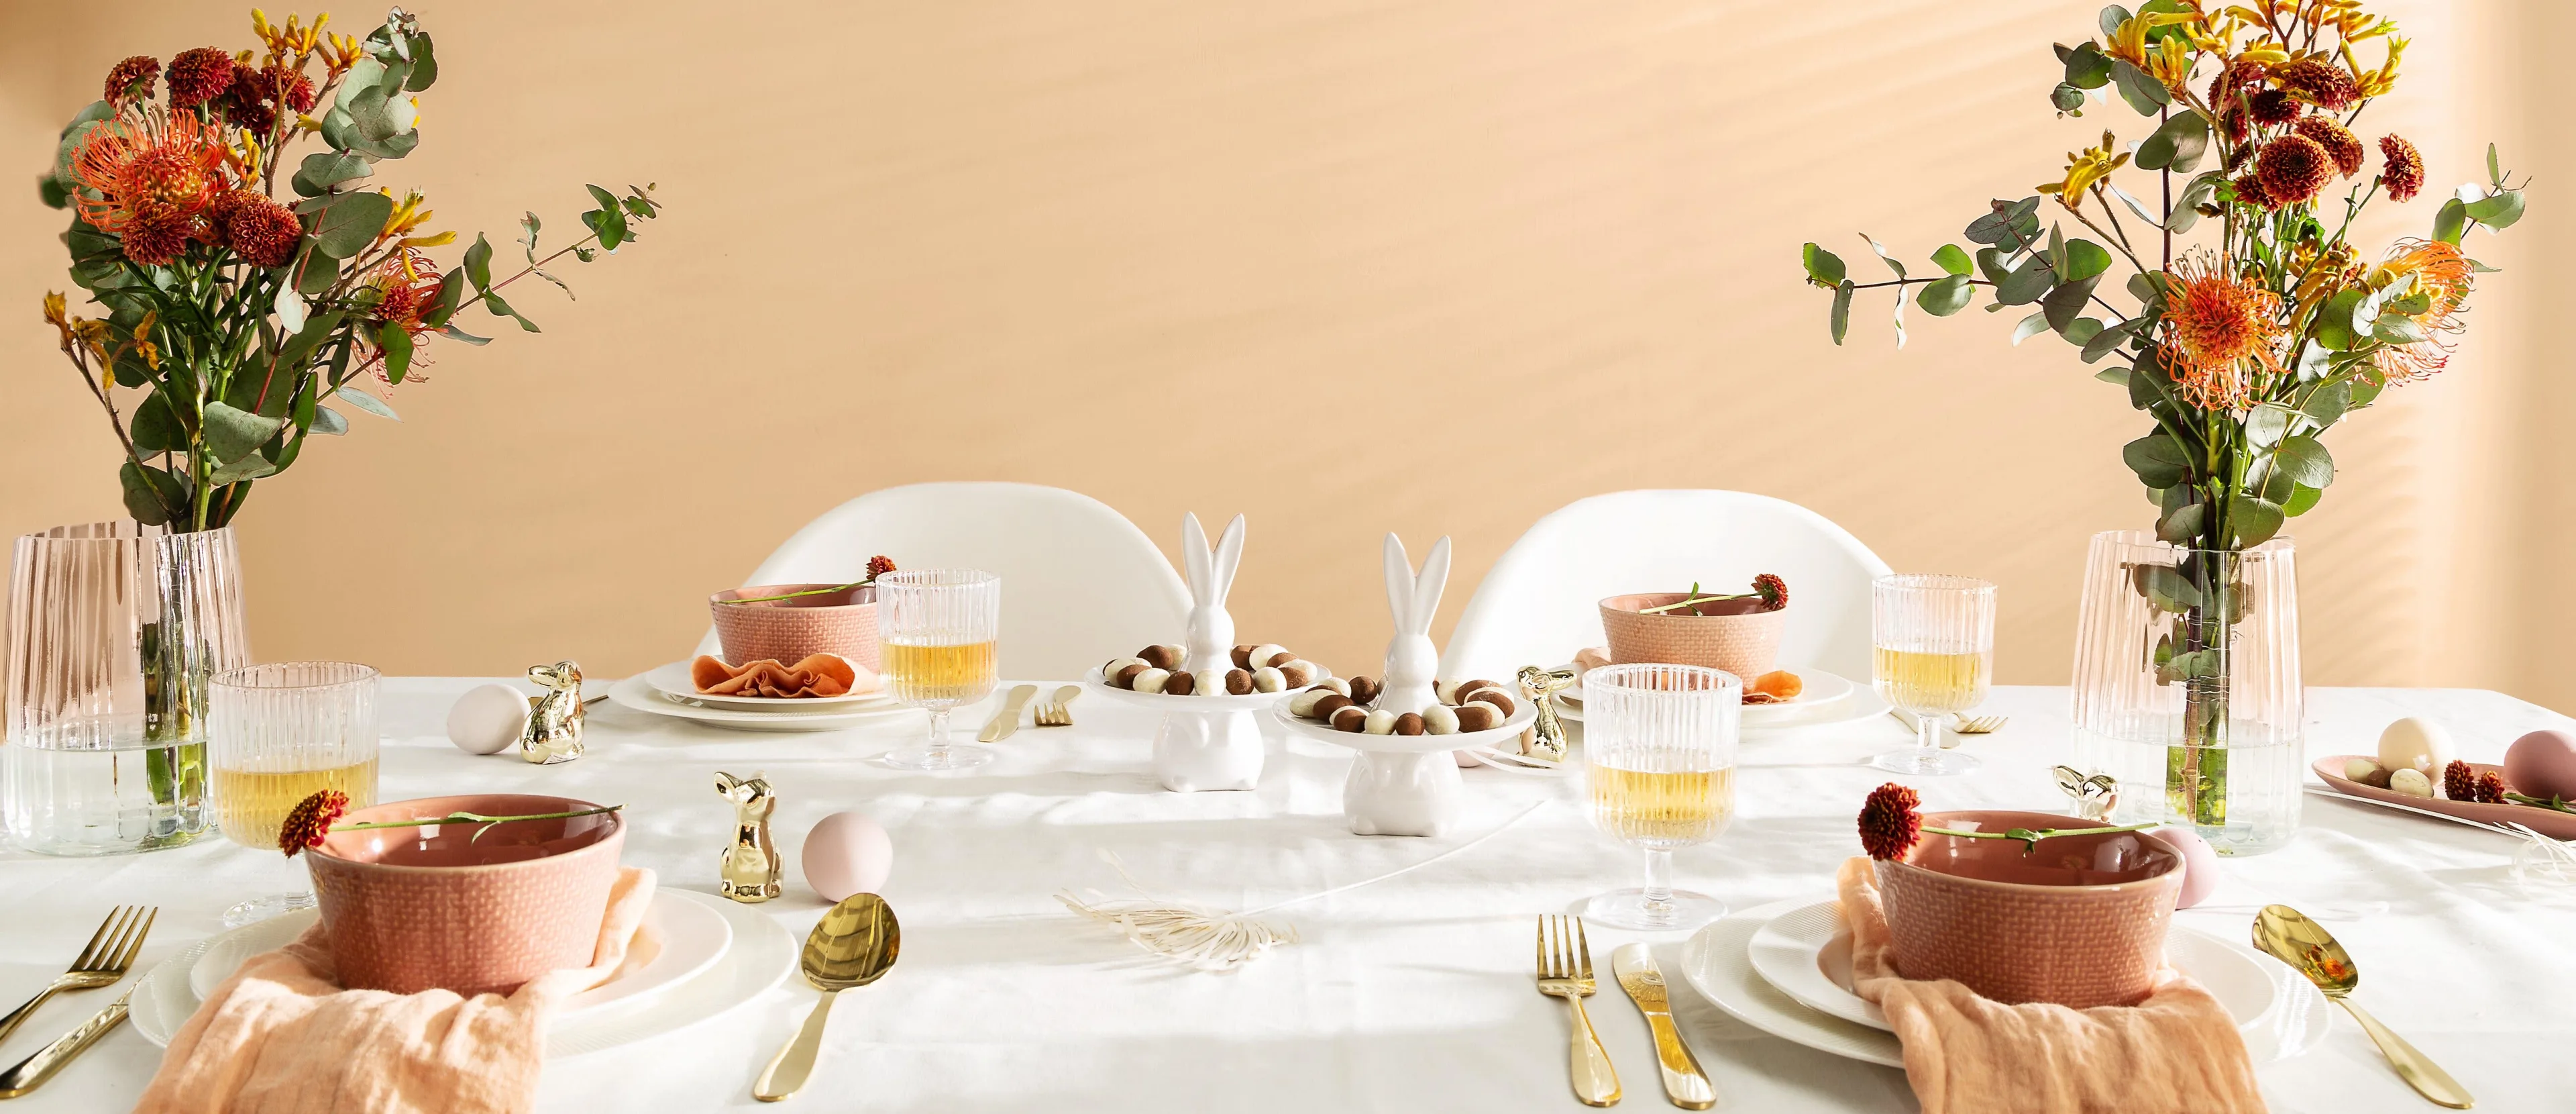 Osterdeko mit weißen Tellern, goldenem Besteck und weißen Servierschalen in Häschenform gefüllt mit süßem Gebäck